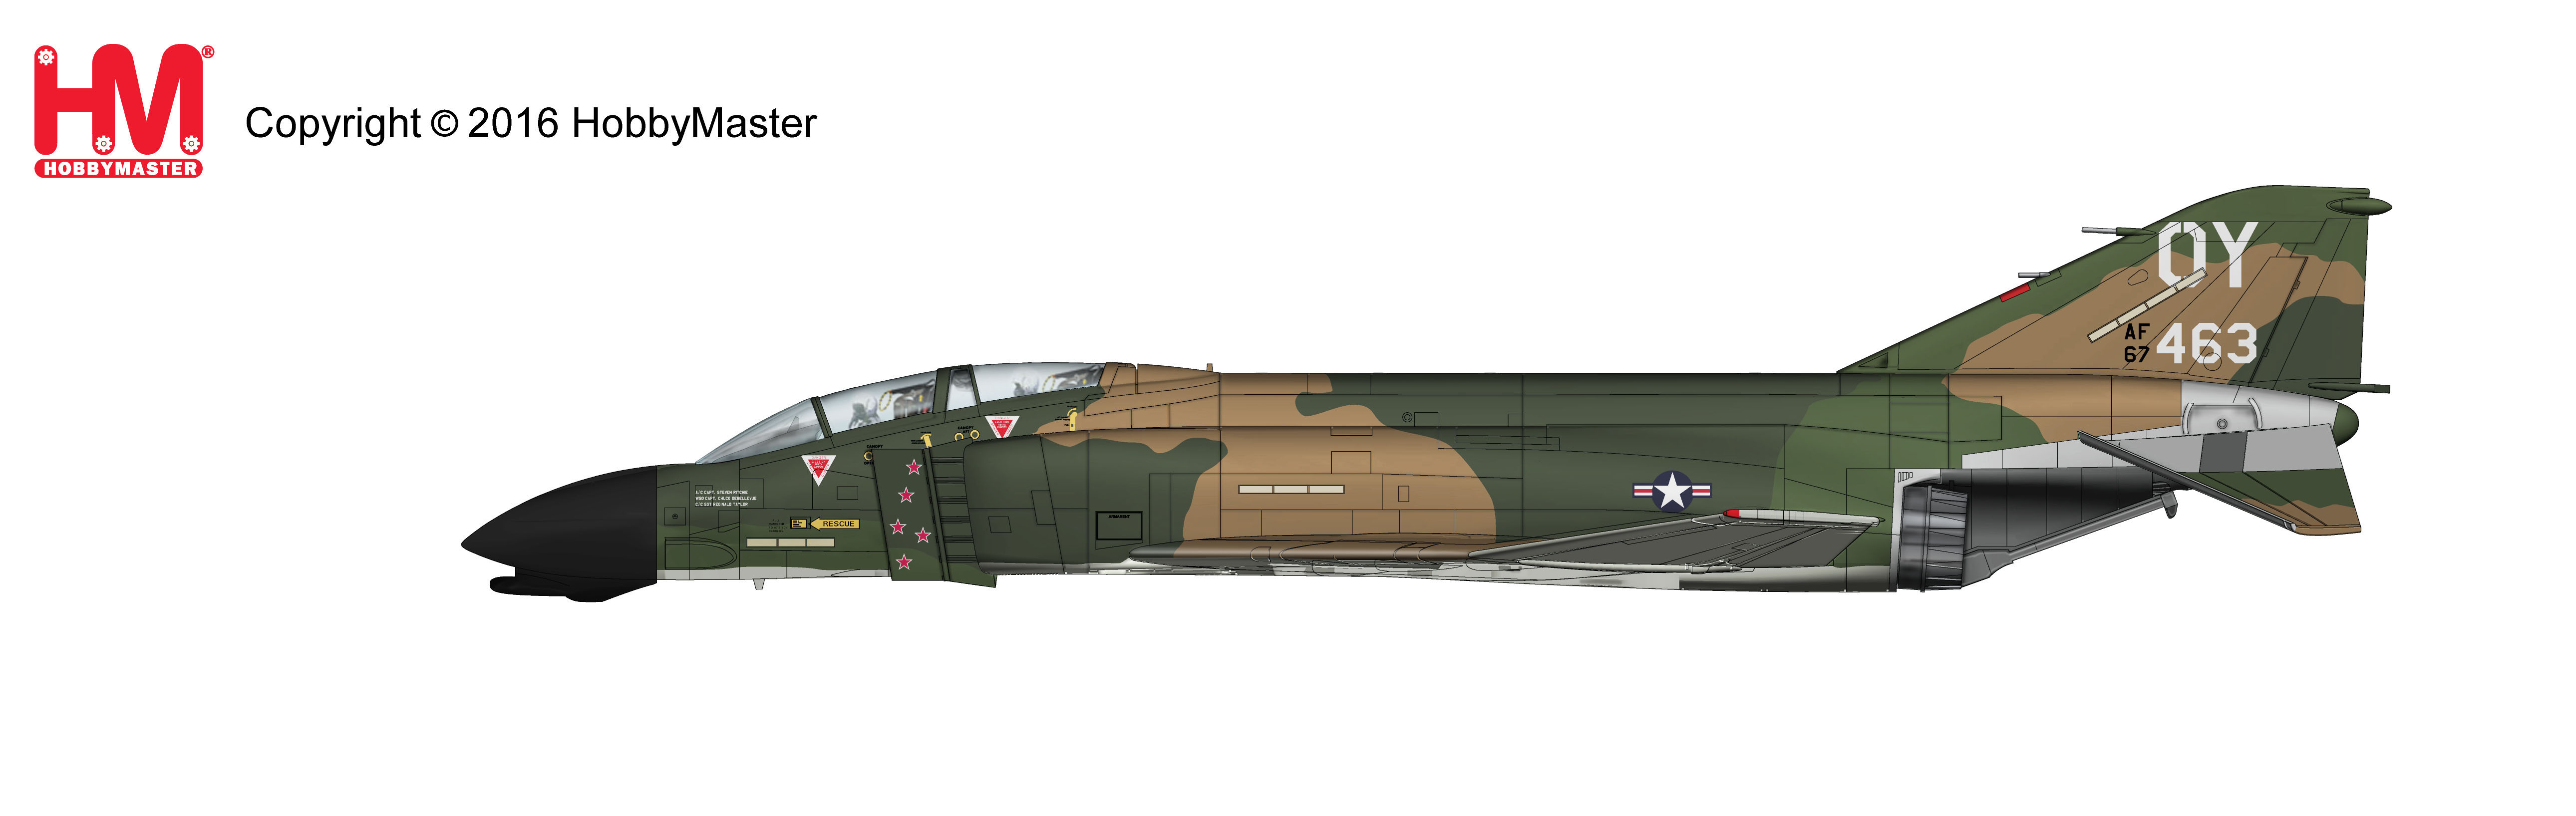 ブランド > ホビーマスター＆スカイマックス > HA1973 F-4D ファントム